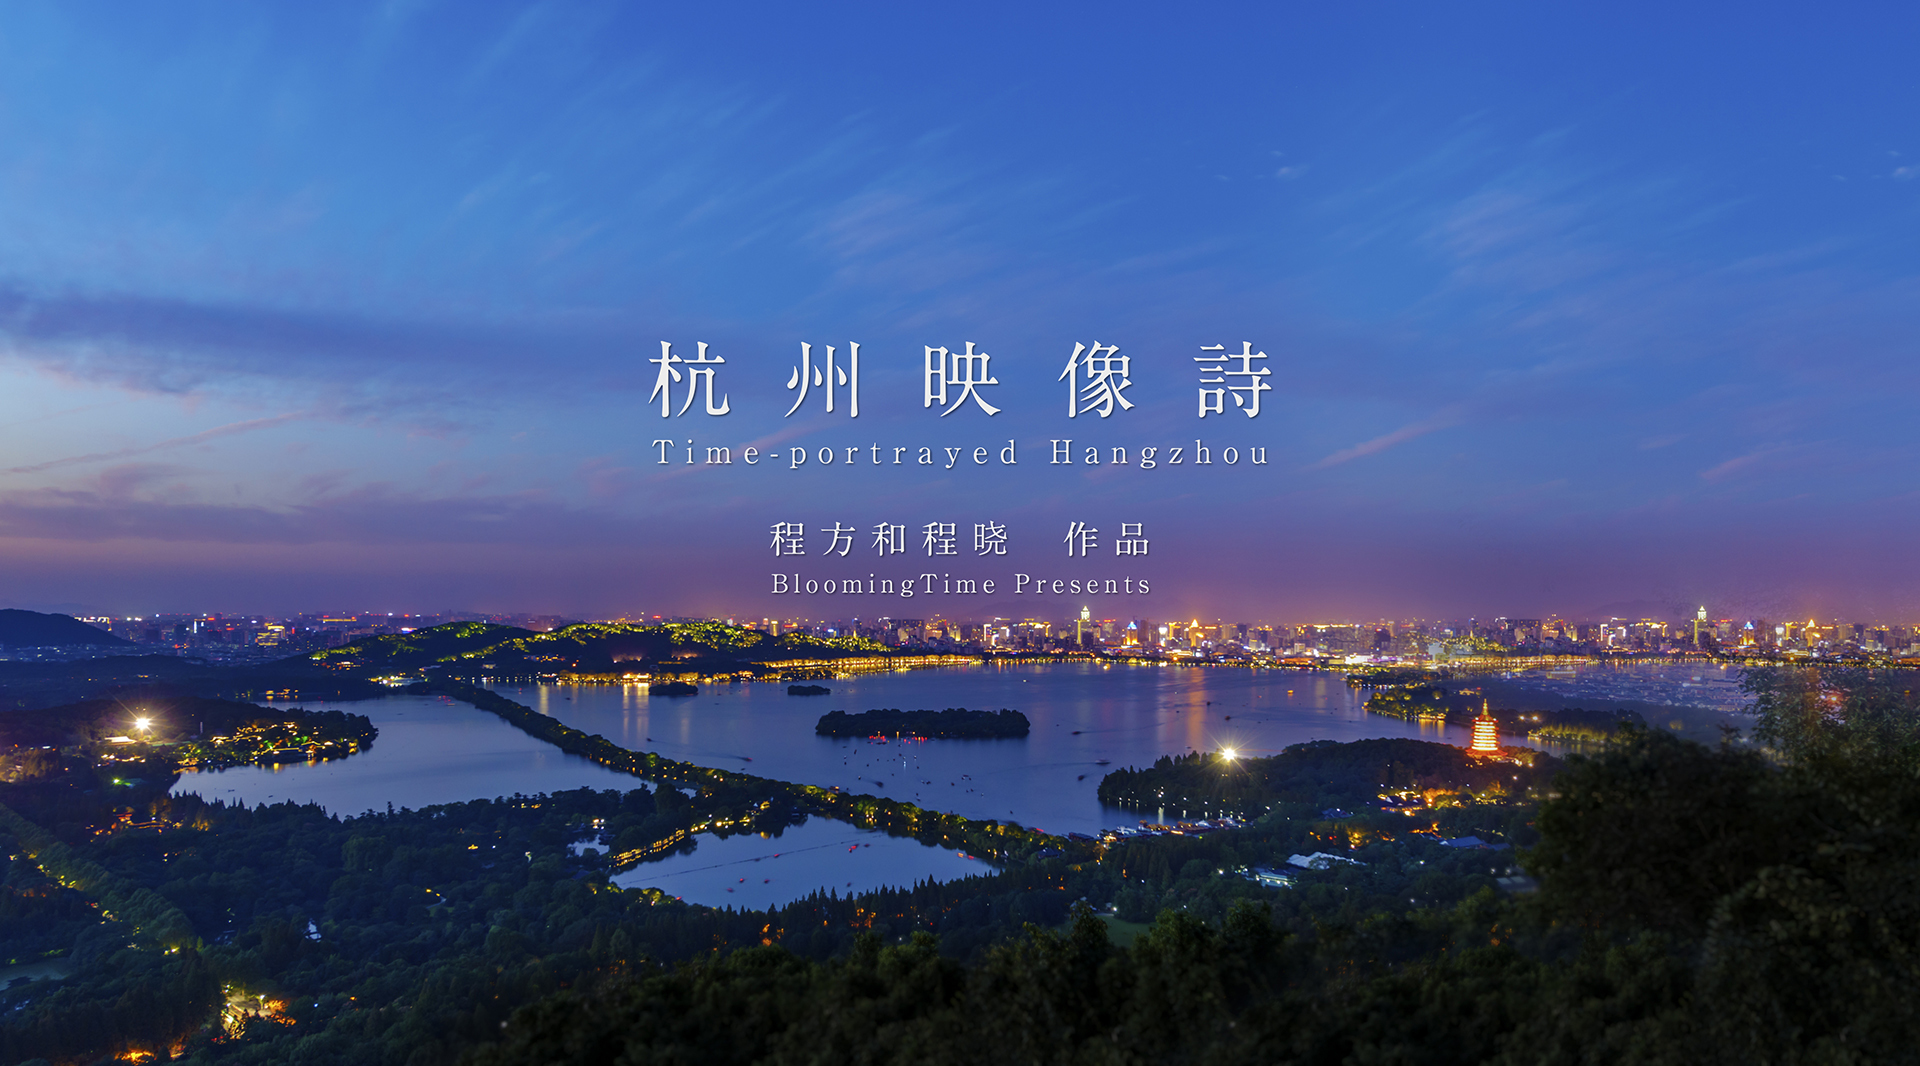 八分钟感受最精致的杭州 杭州映像诗